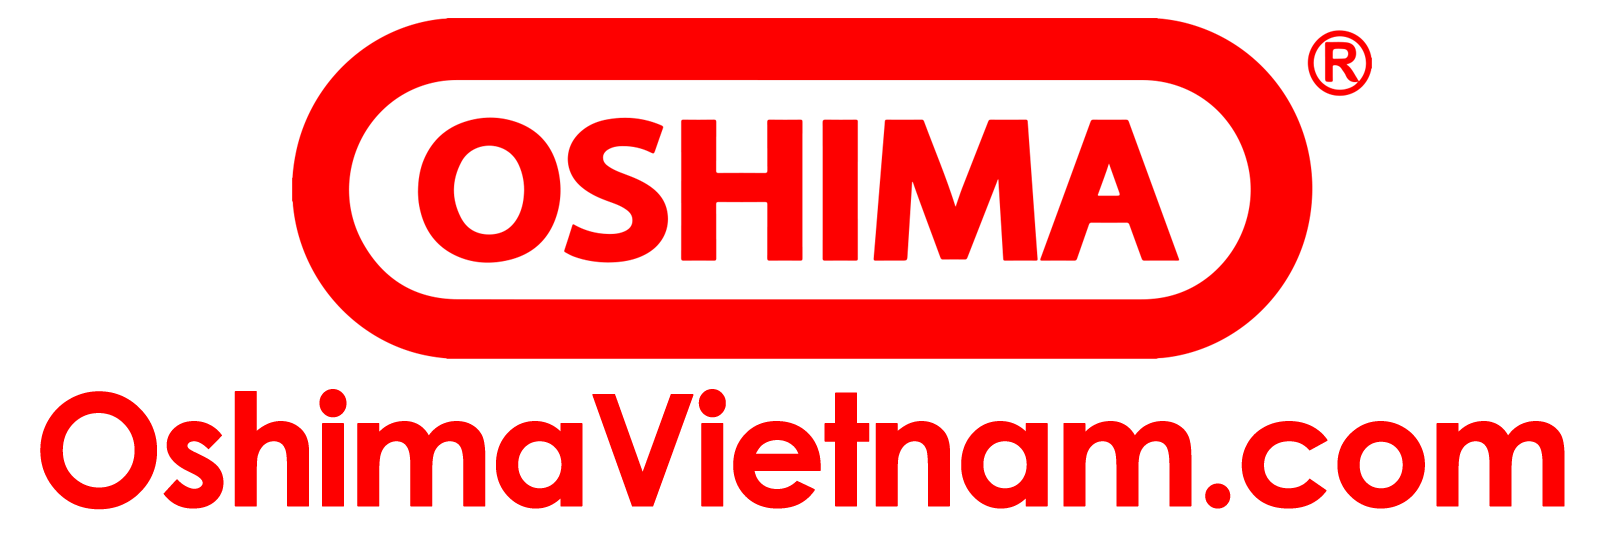 Đầu Xịt Oshima OS 35 chất lượng với giá thành hợp lý tại TPHCM